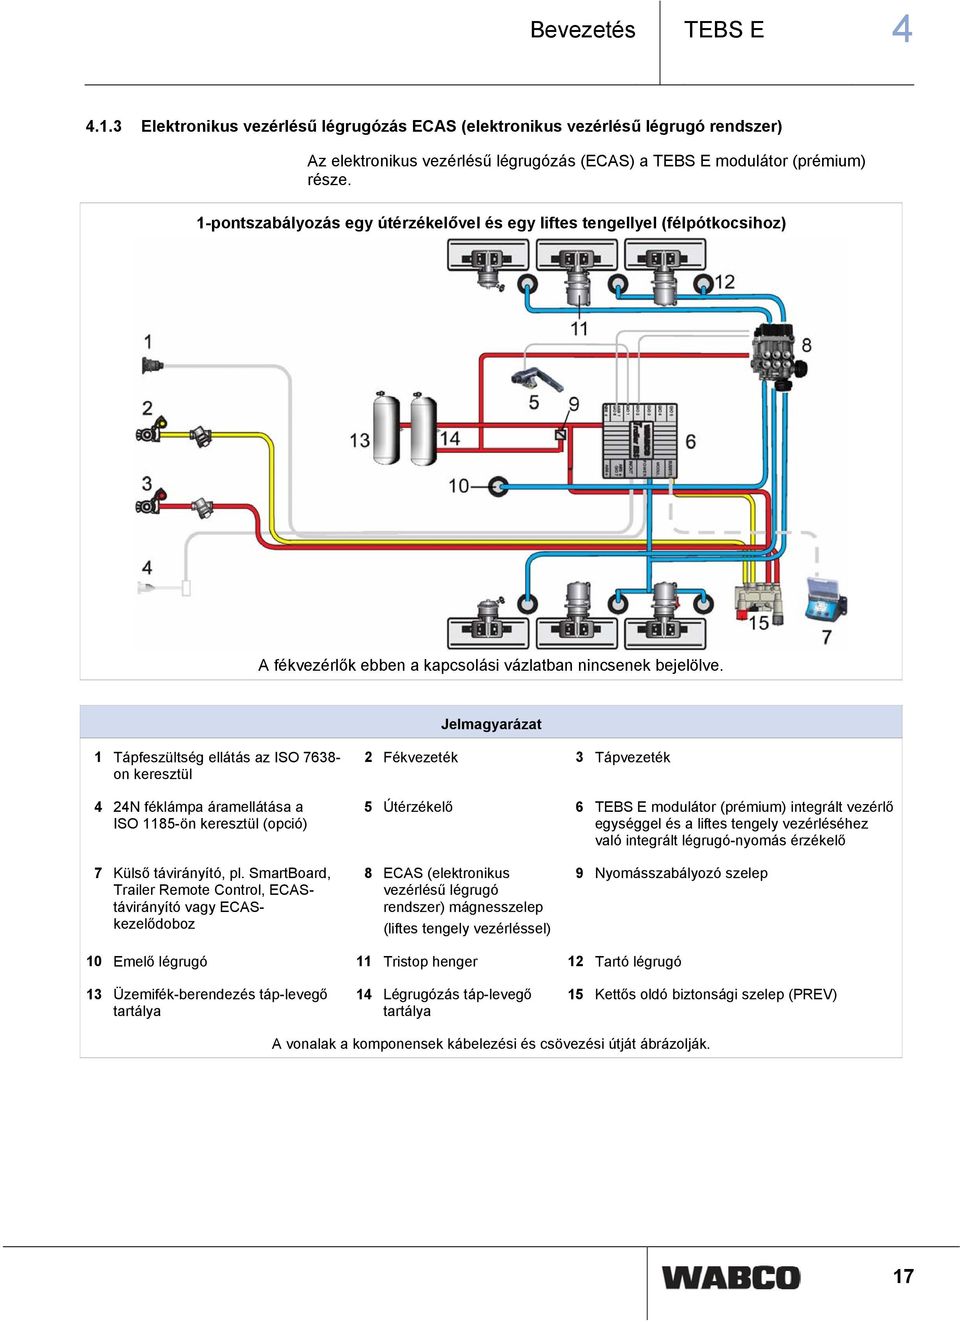 Jelmagyarázat 1 Tápfeszültség ellátás az ISO 7638- on keresztül 4 24N féklámpa áramellátása a ISO 1185-ön keresztül (opció) 2 Fékvezeték 3 Tápvezeték 5 Útérzékelő 6 TEBS E modulátor (prémium)